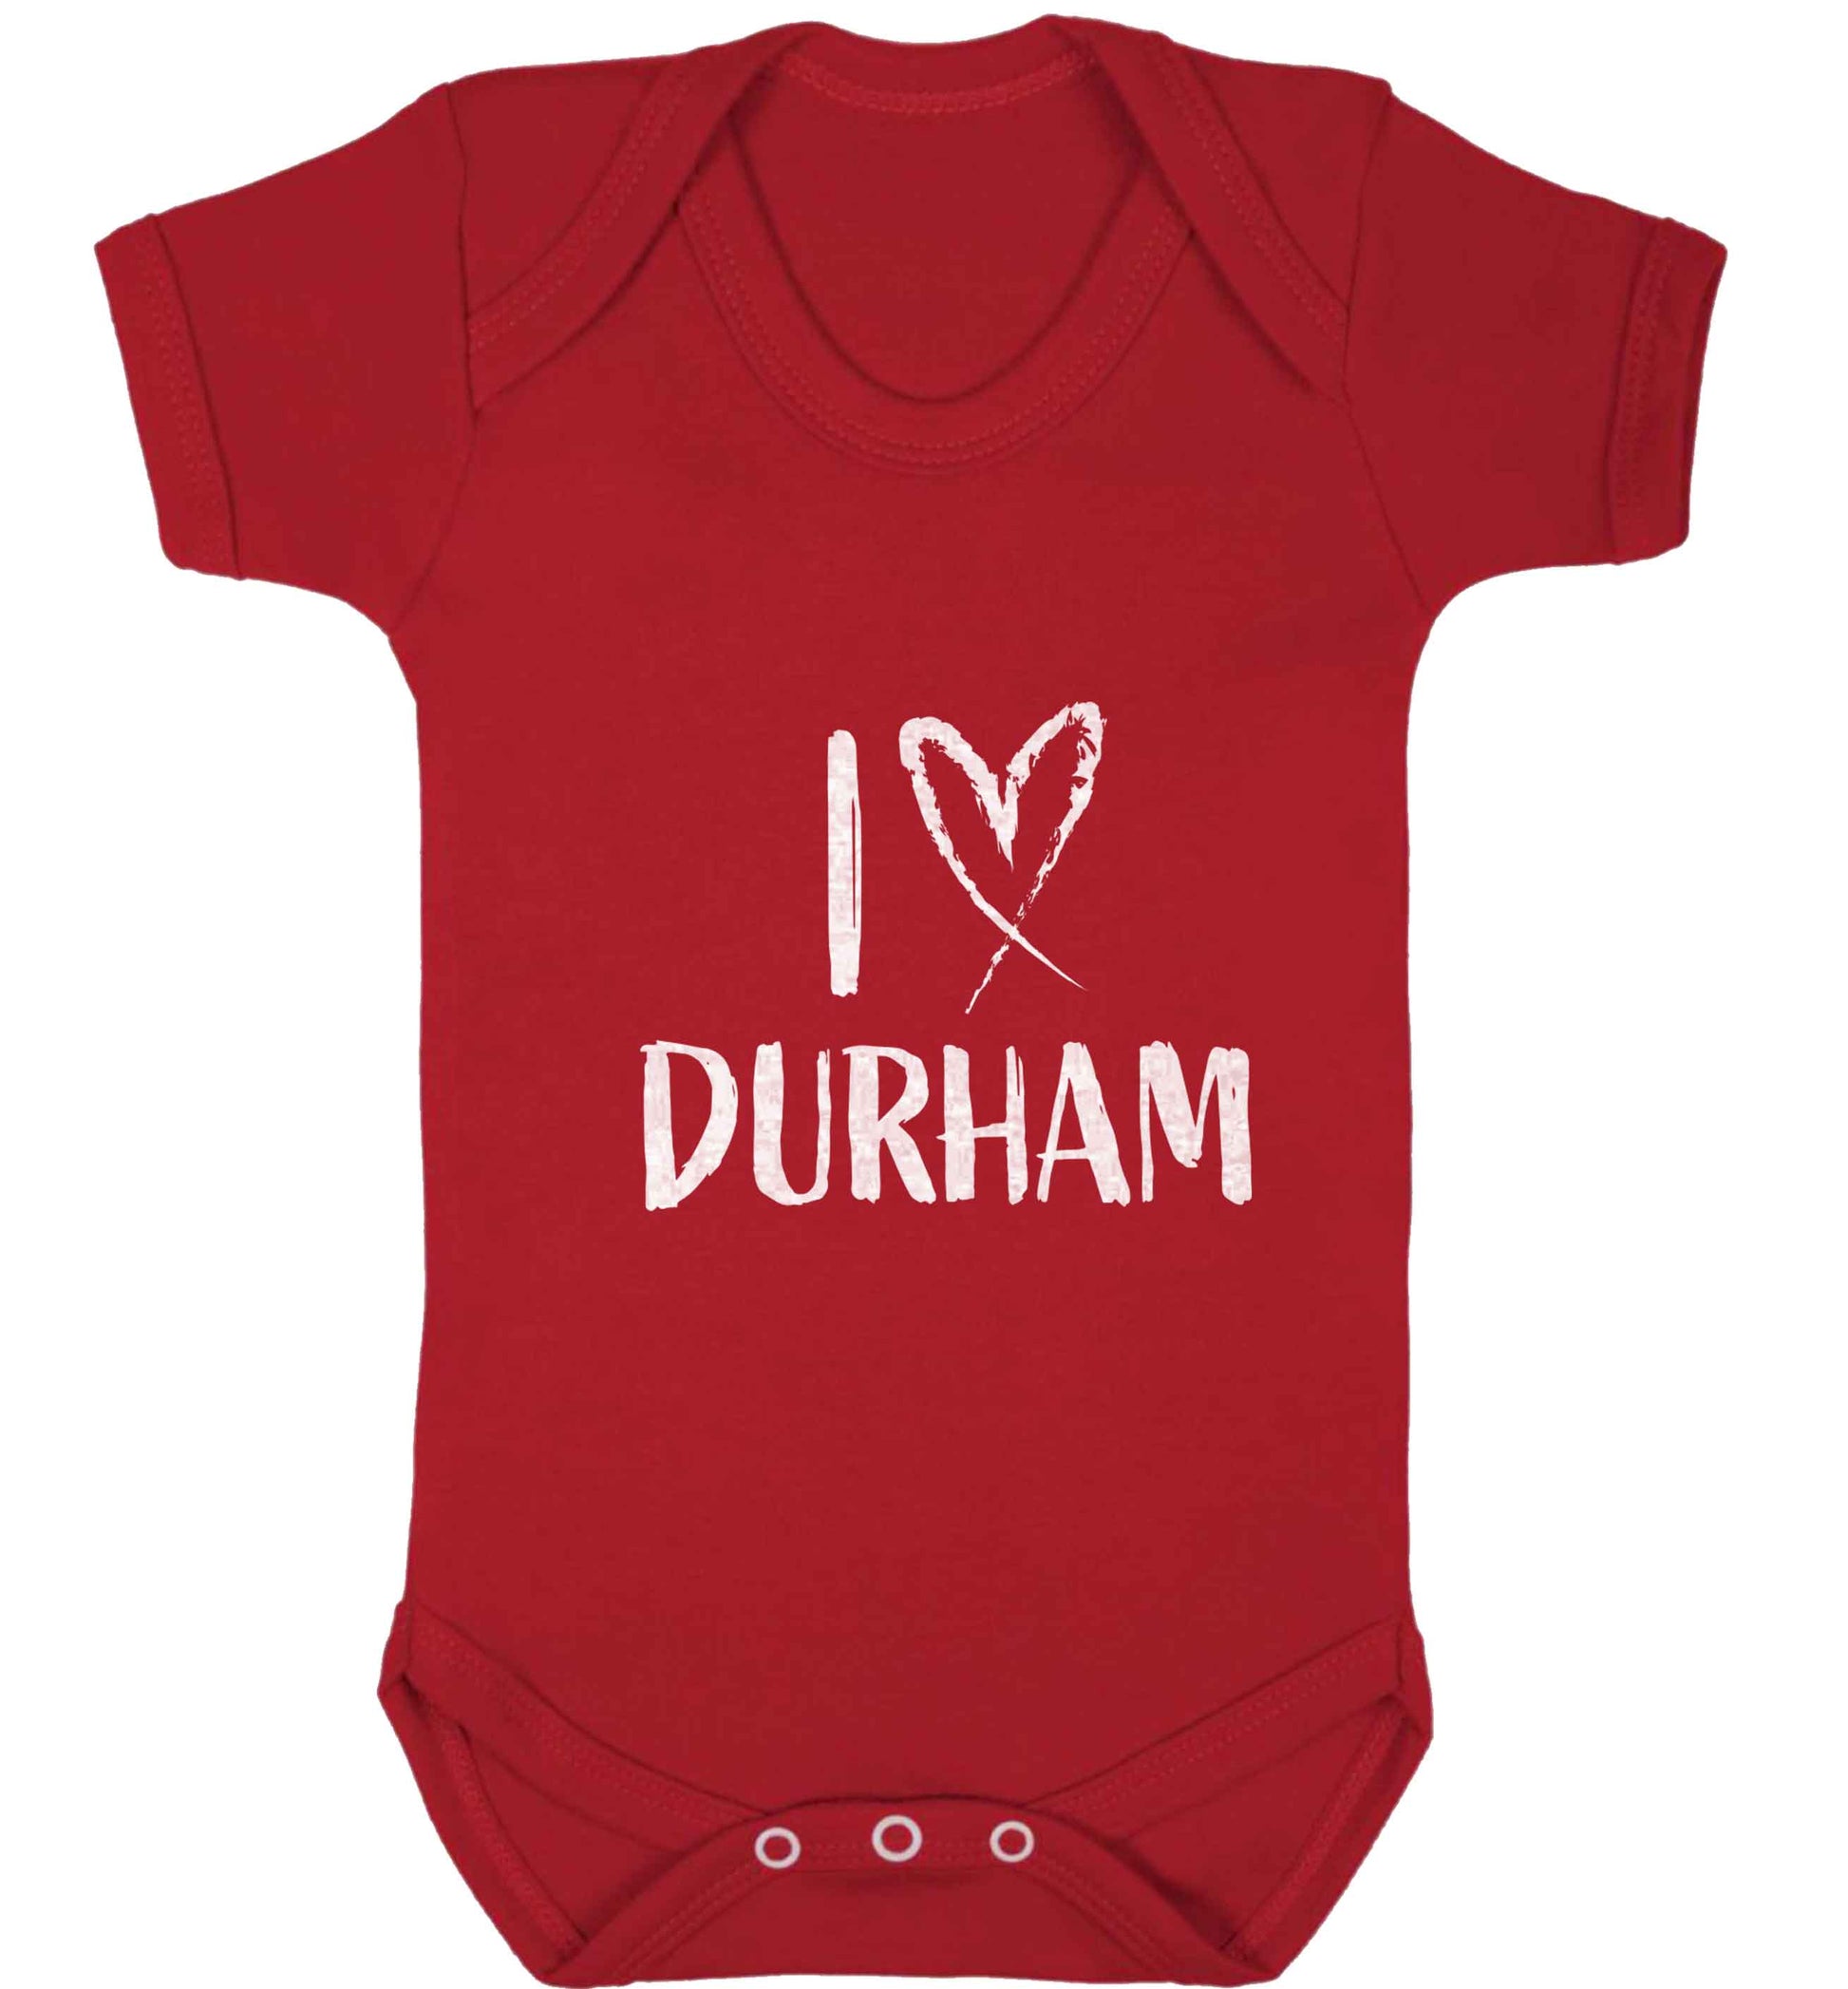 I love Durham baby vest red 18-24 months